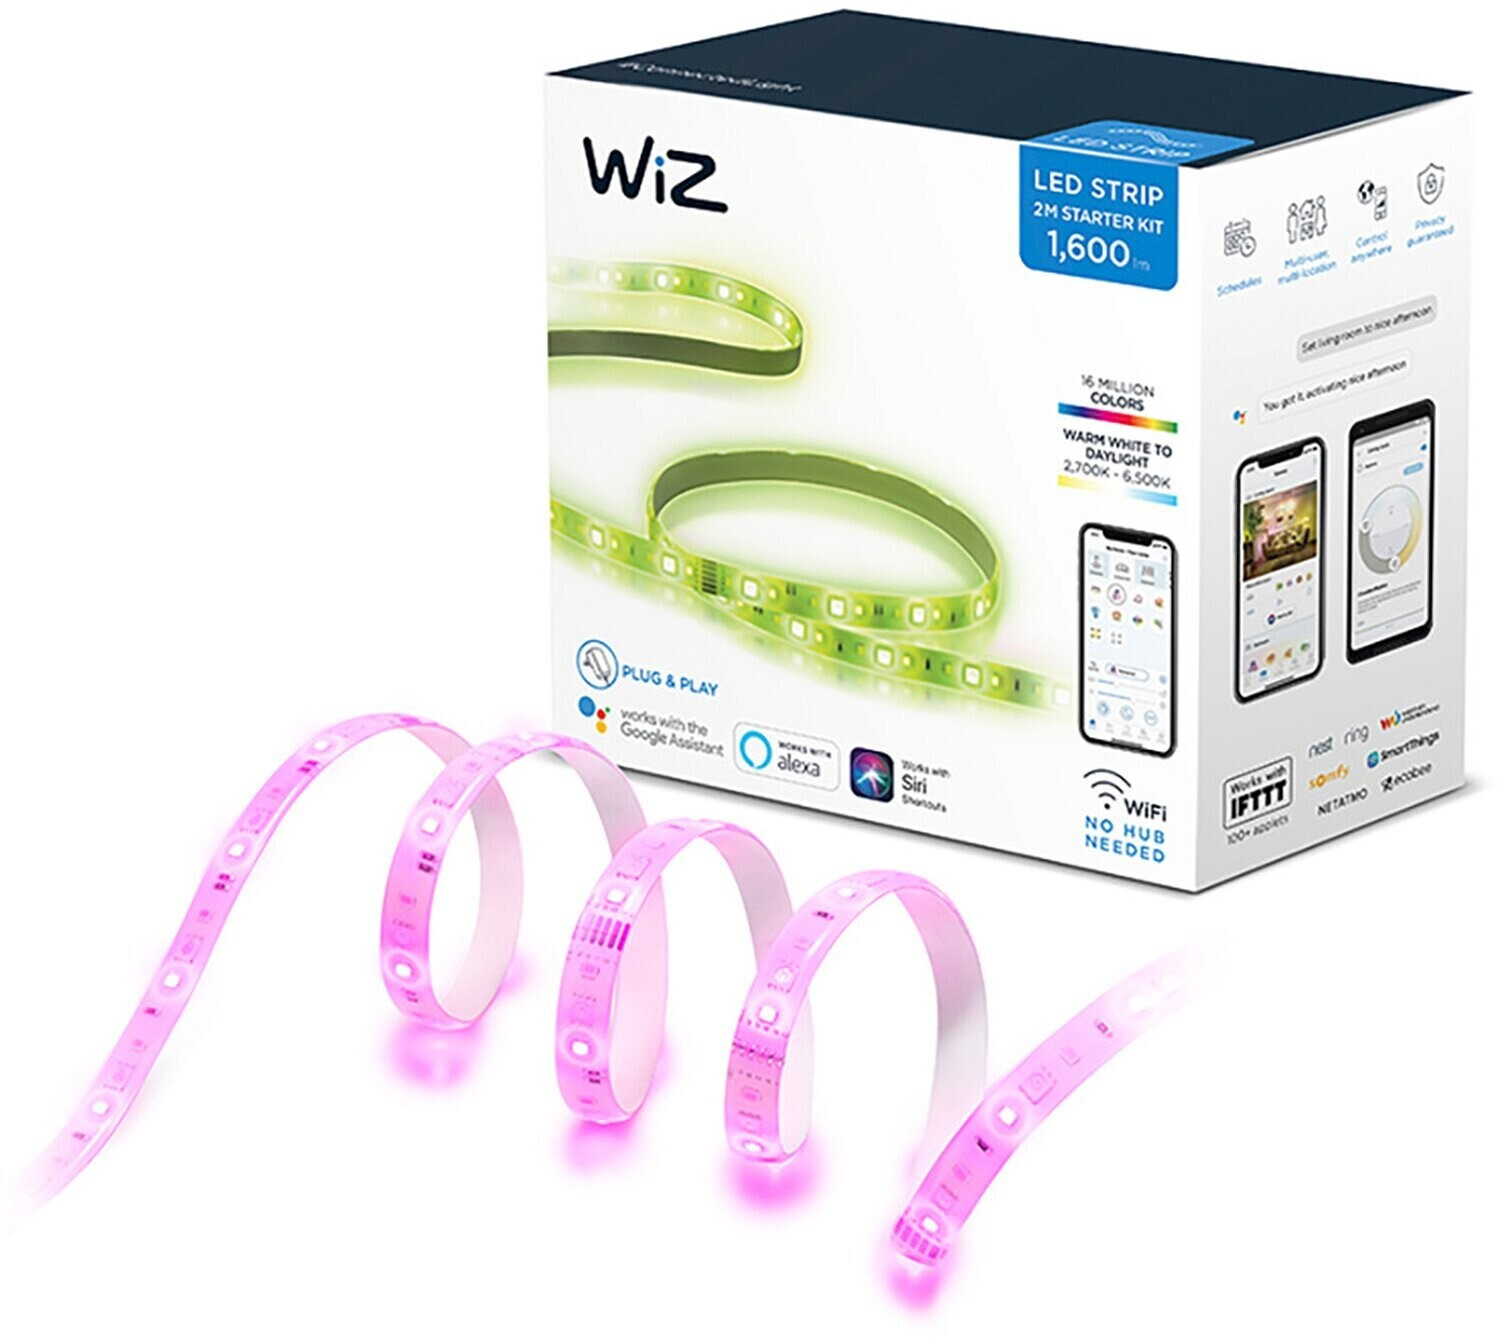 Tira LED  WiZ 2m, Luz blanca y colores, WiFi, Tecnología